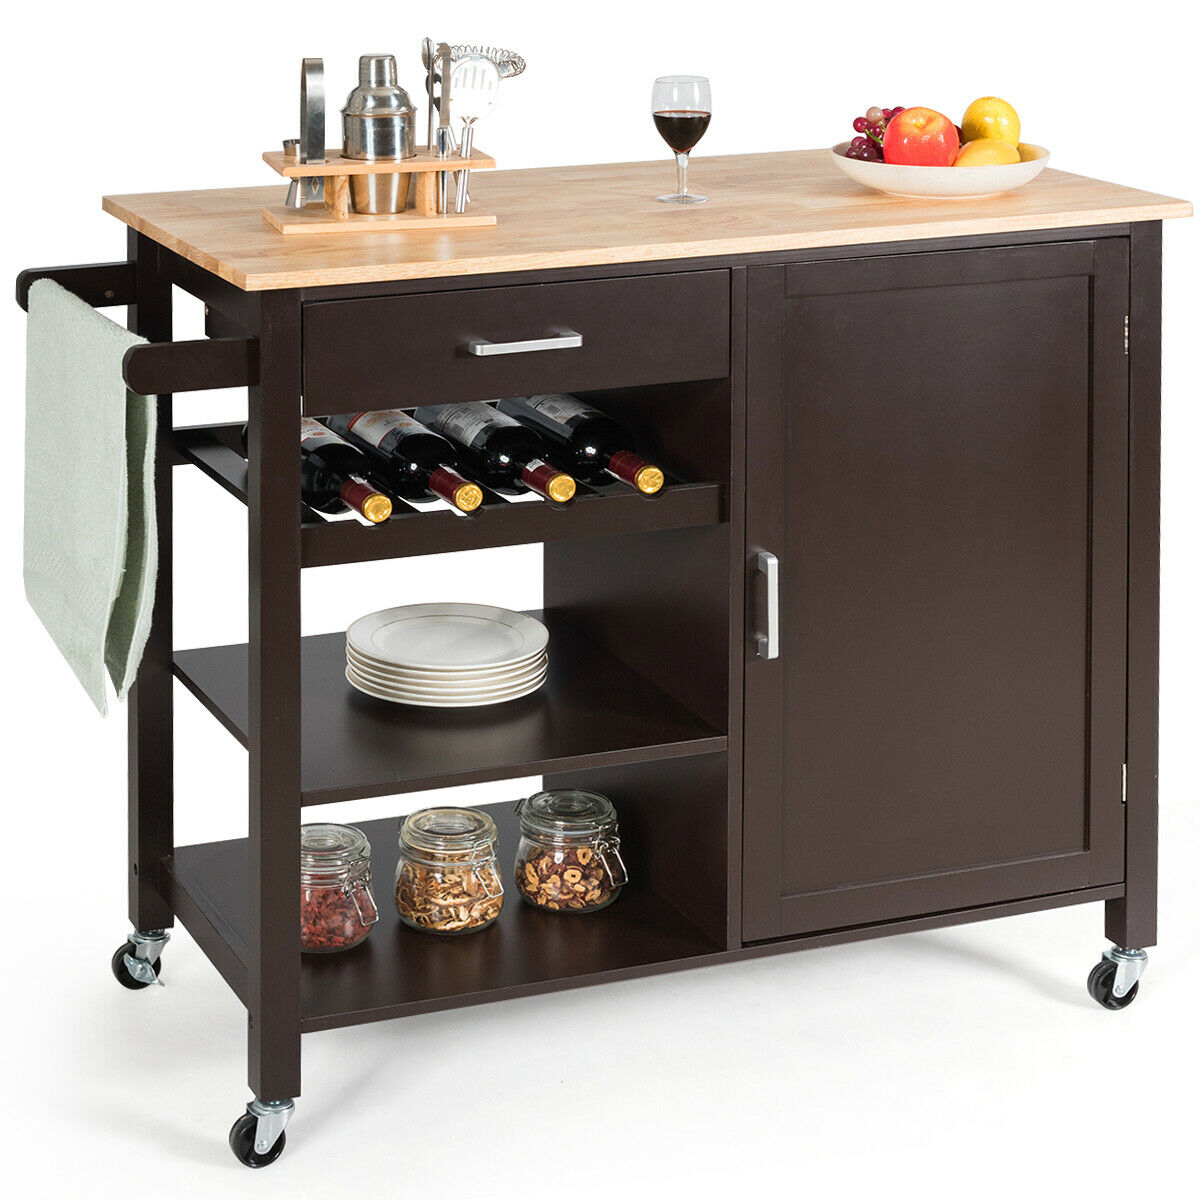 4-Tier Wood Kitchen Island Trolley Cart Storage Cabinet W/ Wine Rack & Drawer